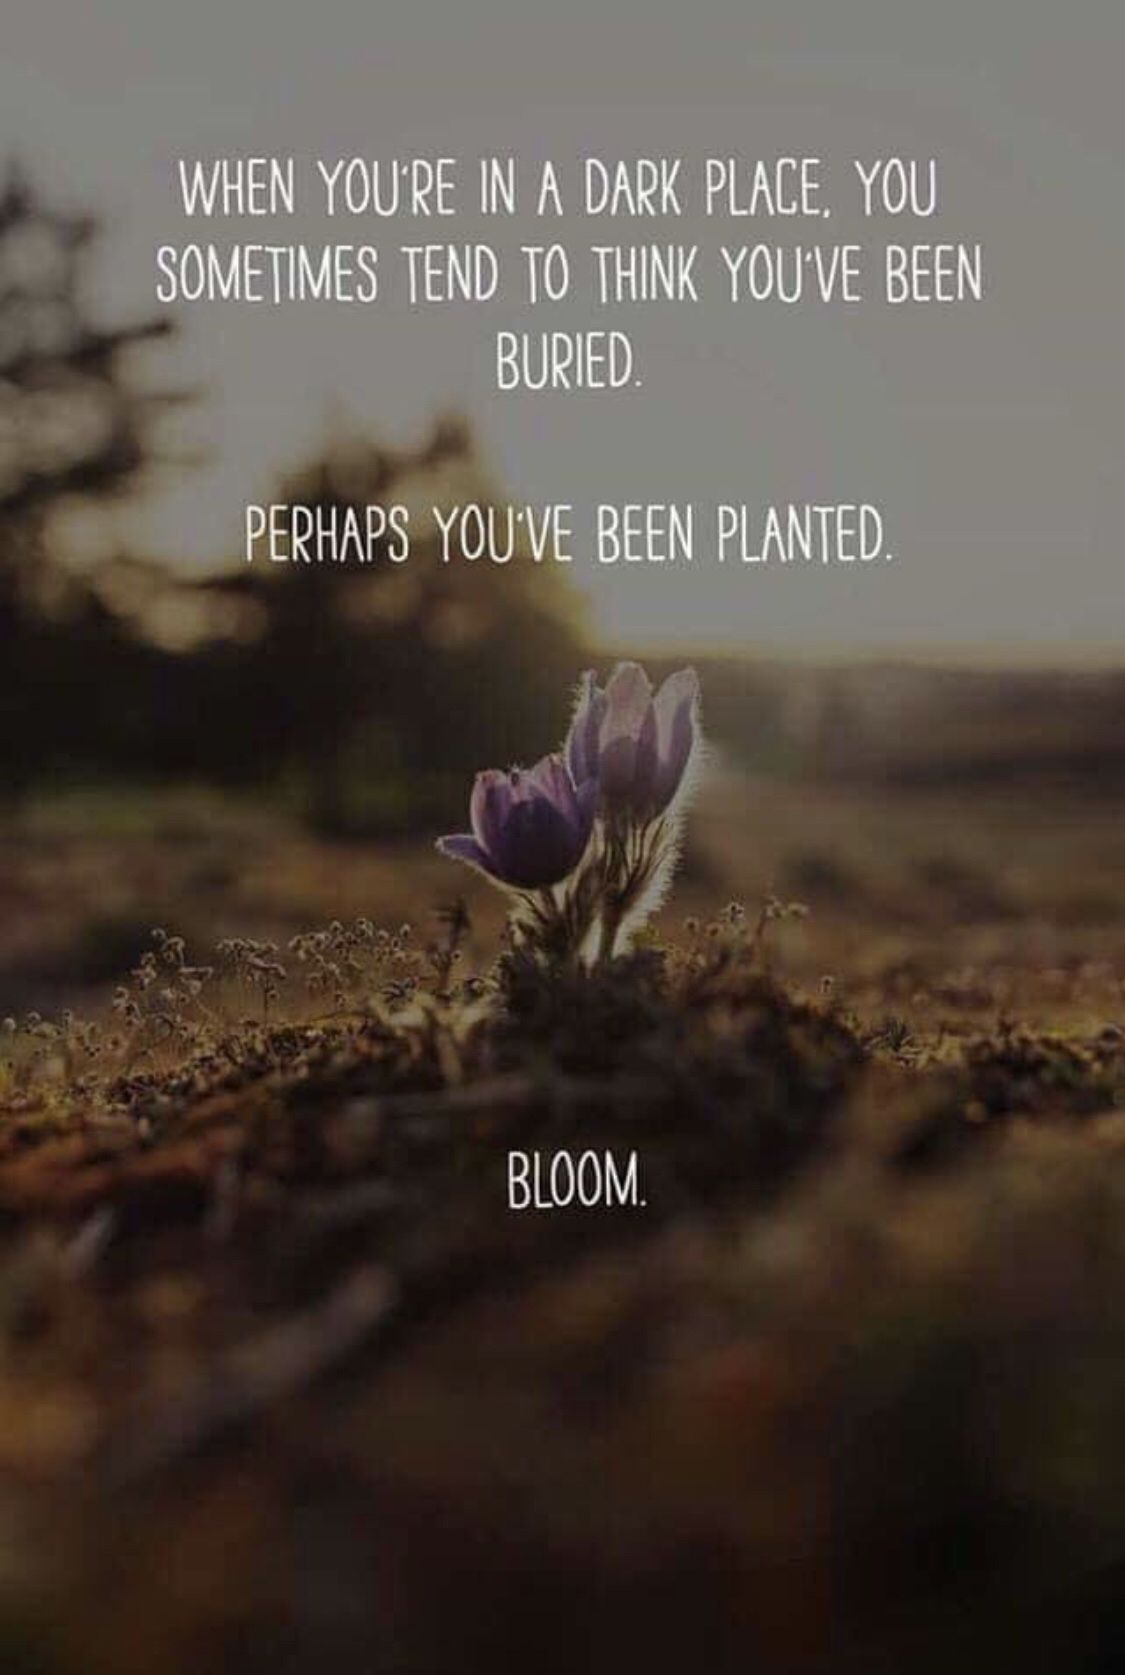 Dark places bring blooms -   12 planting Quotes sad ideas